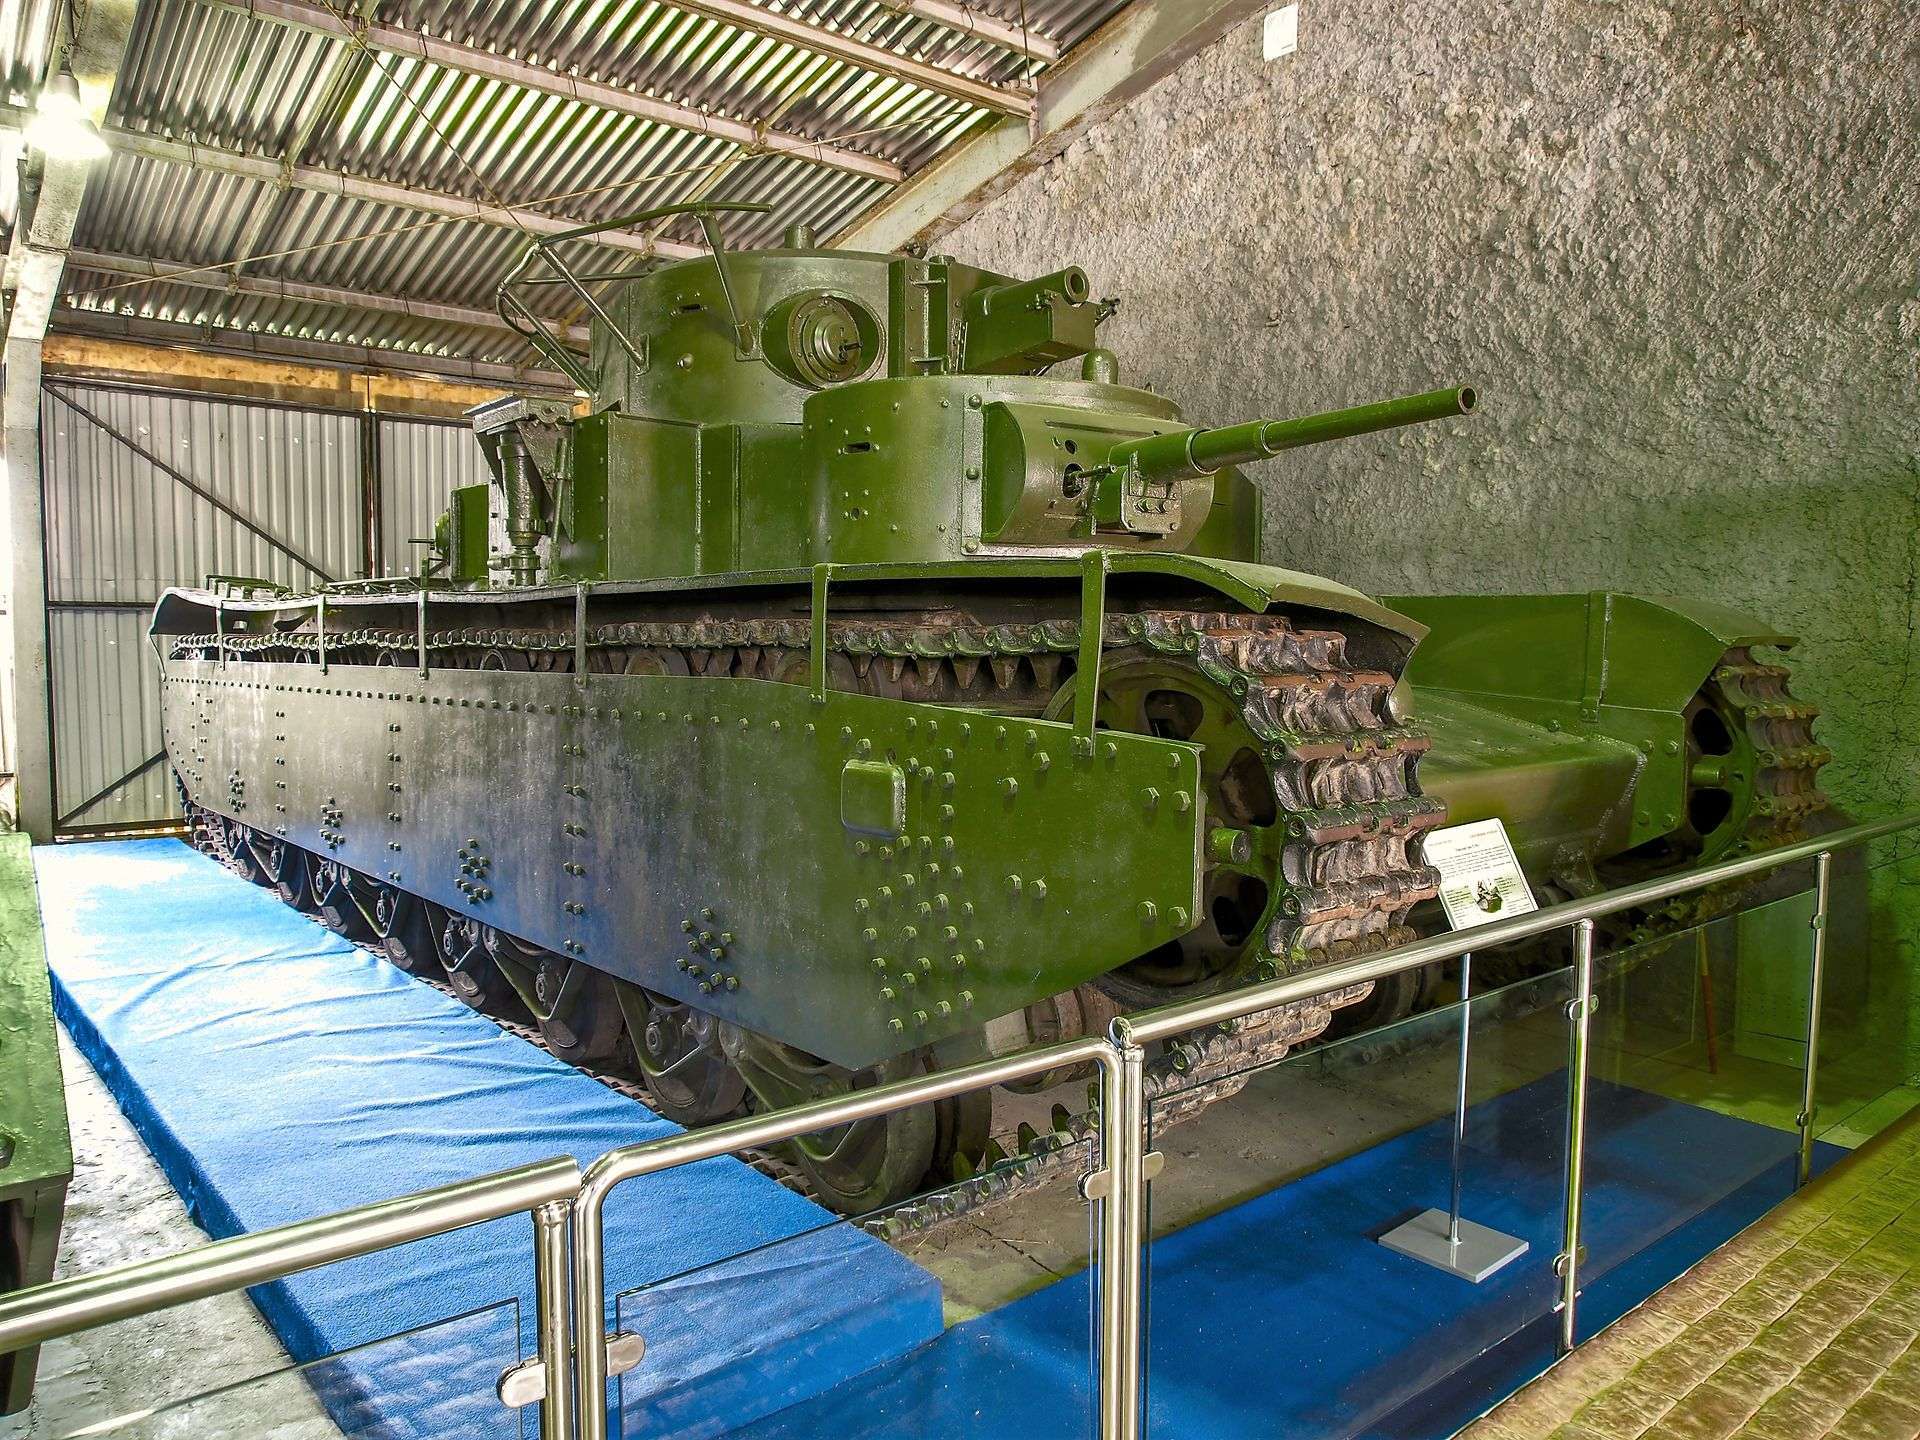 The Soviet T-35 heavy tank.